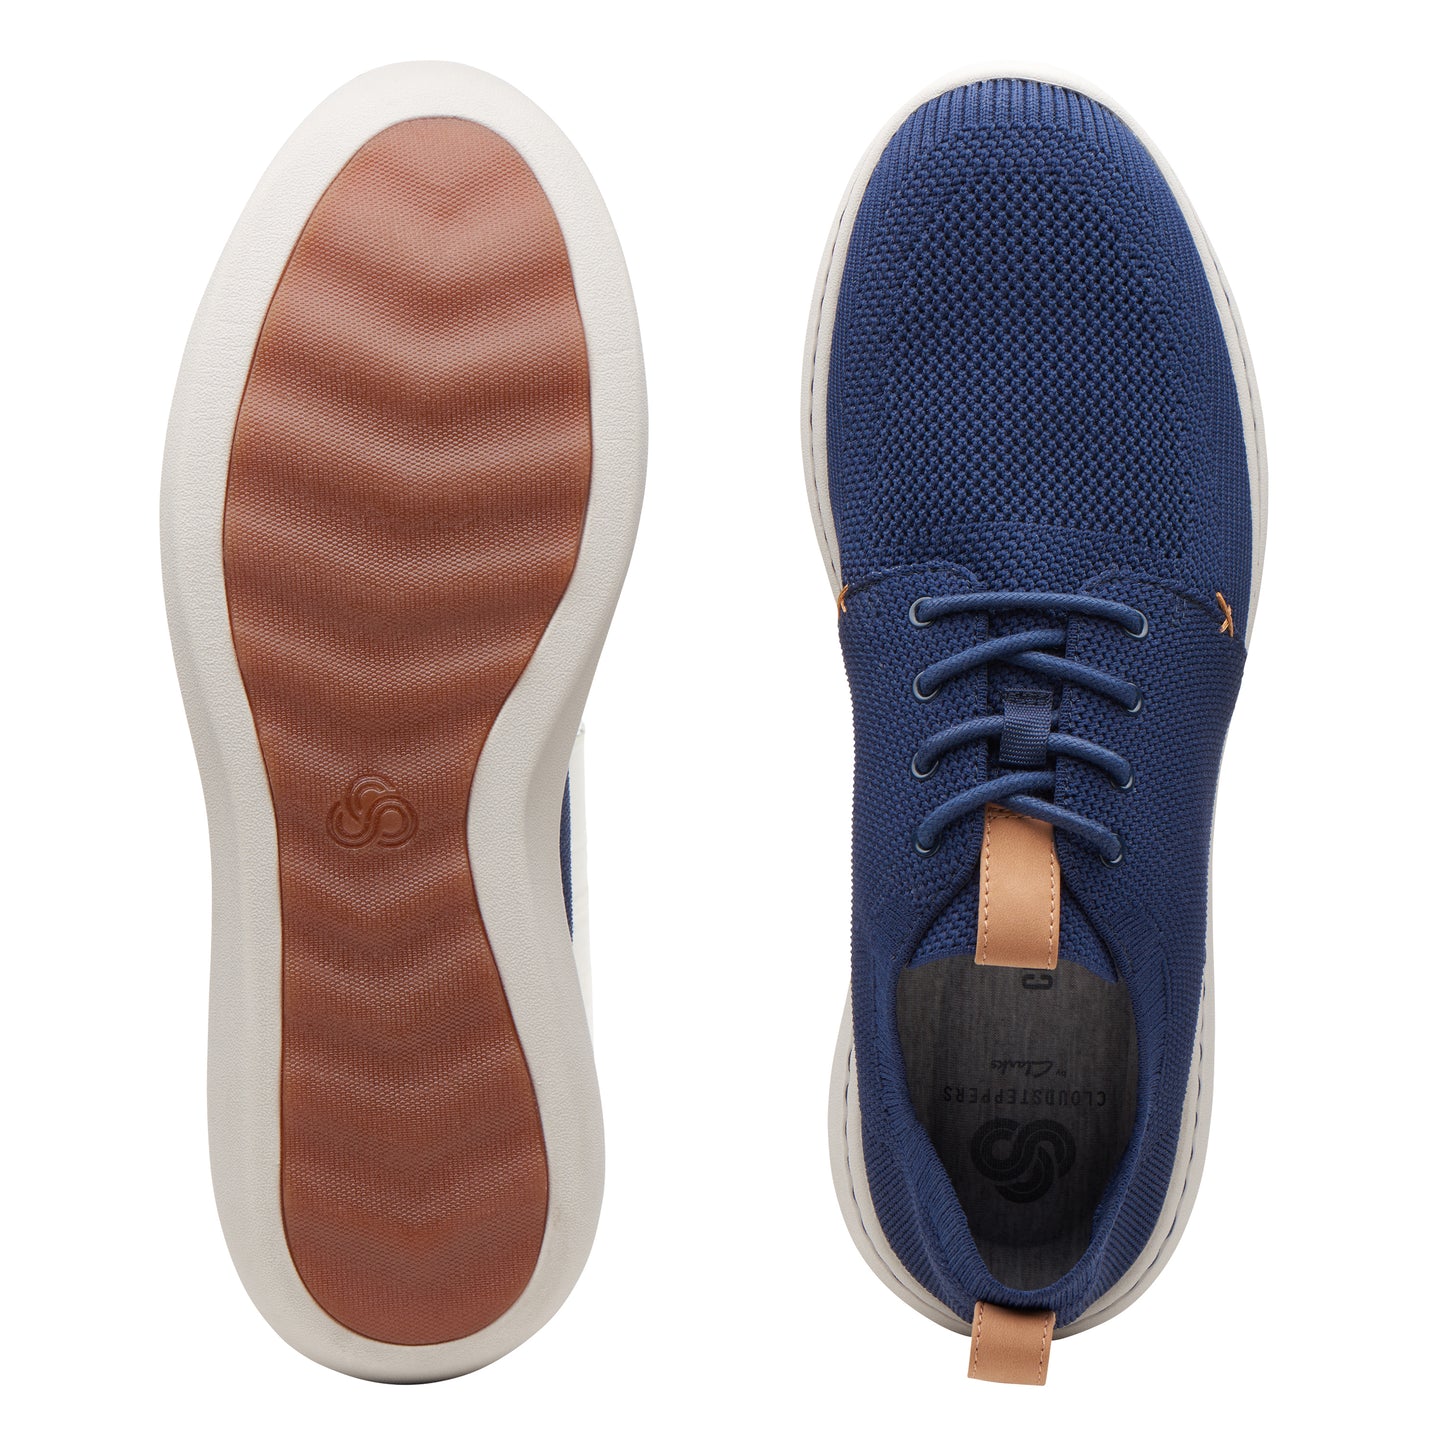 Zapatos Derby De La Marca Clarks Para Hombre Modelo Step Urban Mix NavyEn Color Azul